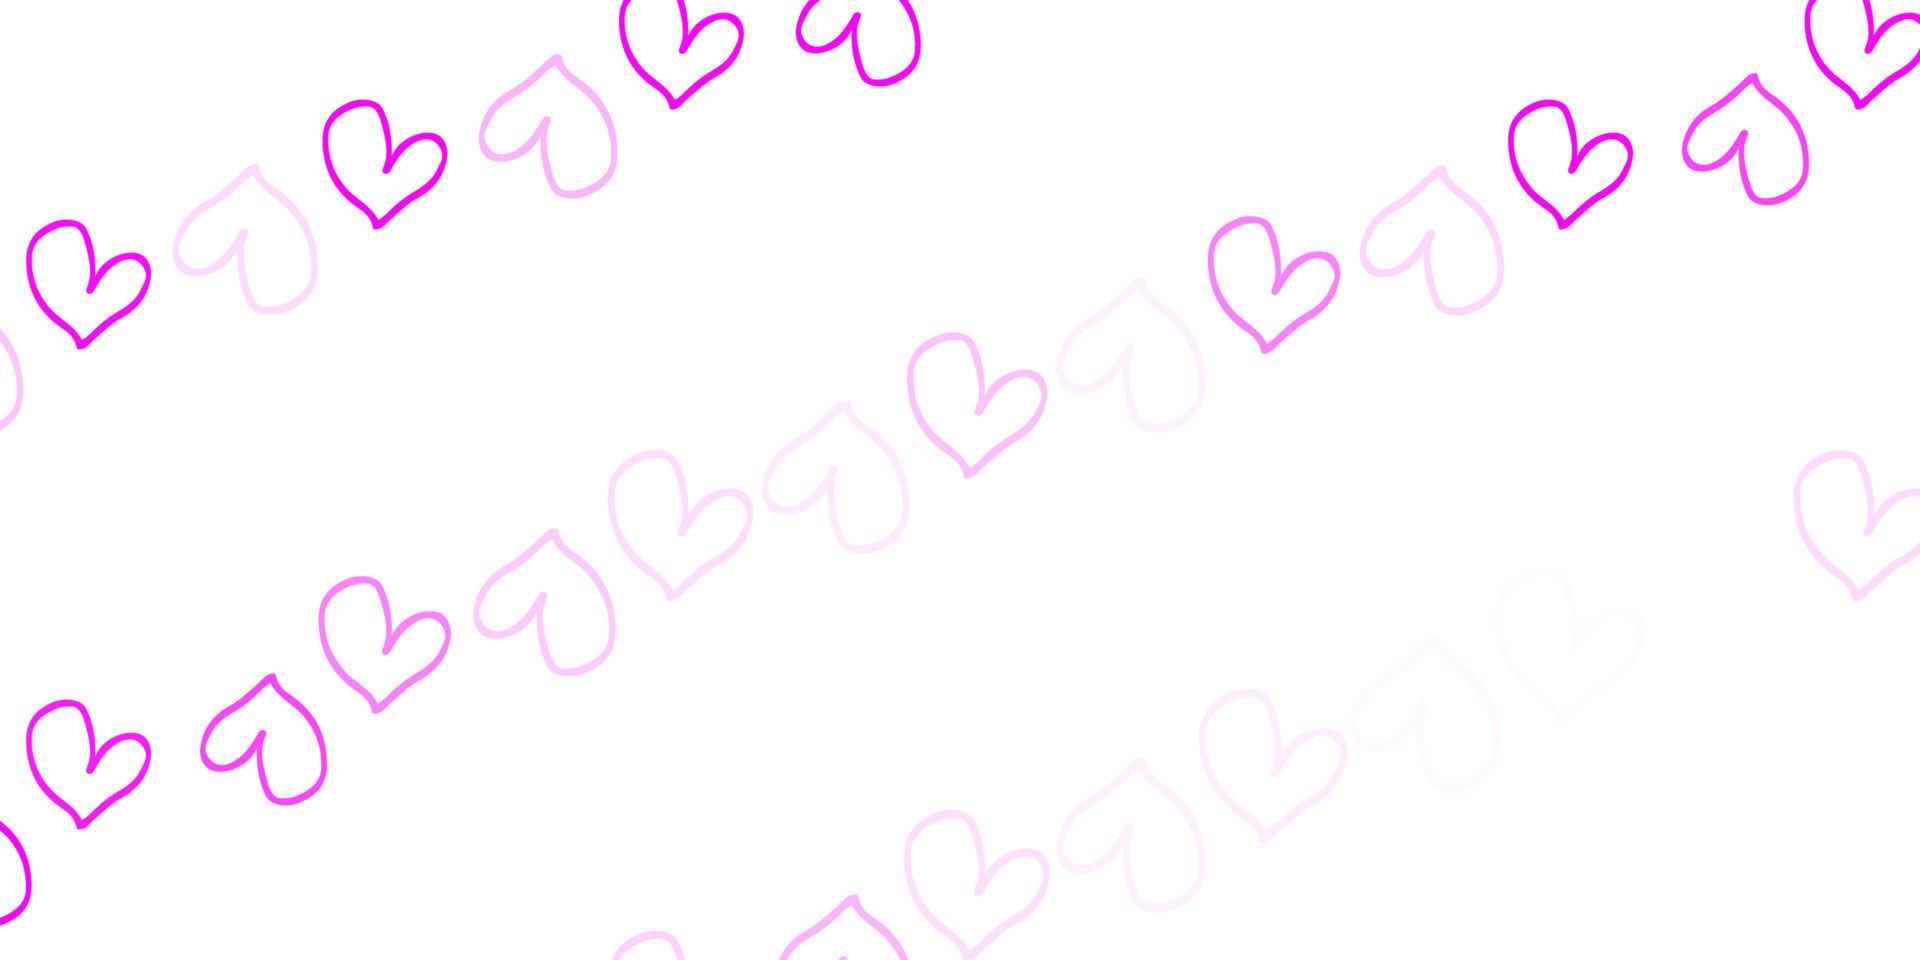 patrón de vector rosa claro con corazones de colores.